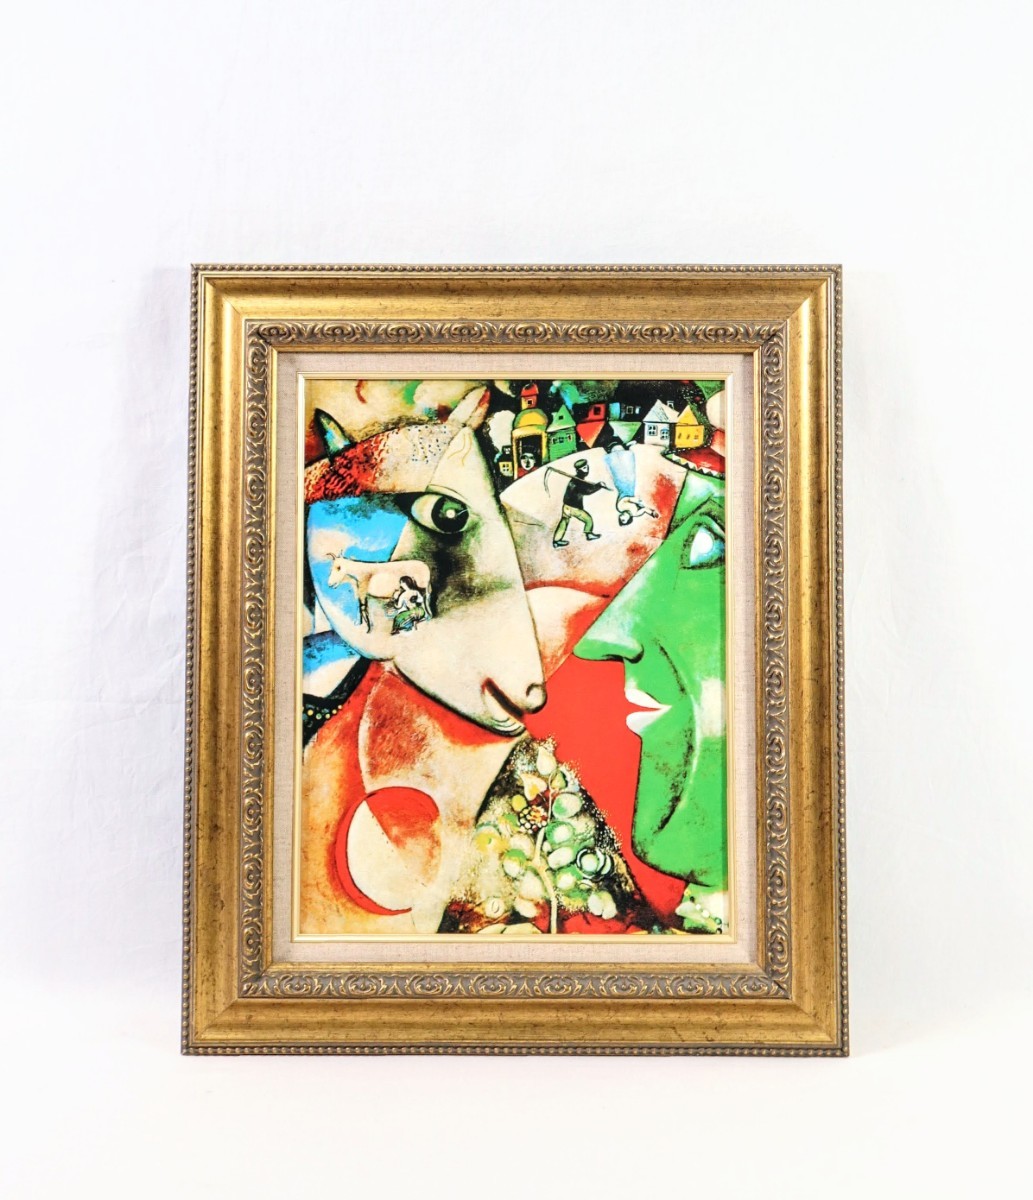 マルク･シャガール 複製｢私と村｣画寸 F6 ｢愛と祈り｣をテーマとした幻想的な絵画, 詩の世界を覗き見たような不思議な感覚に陥る 8198, ホビー, カルチャー, 美術品, その他